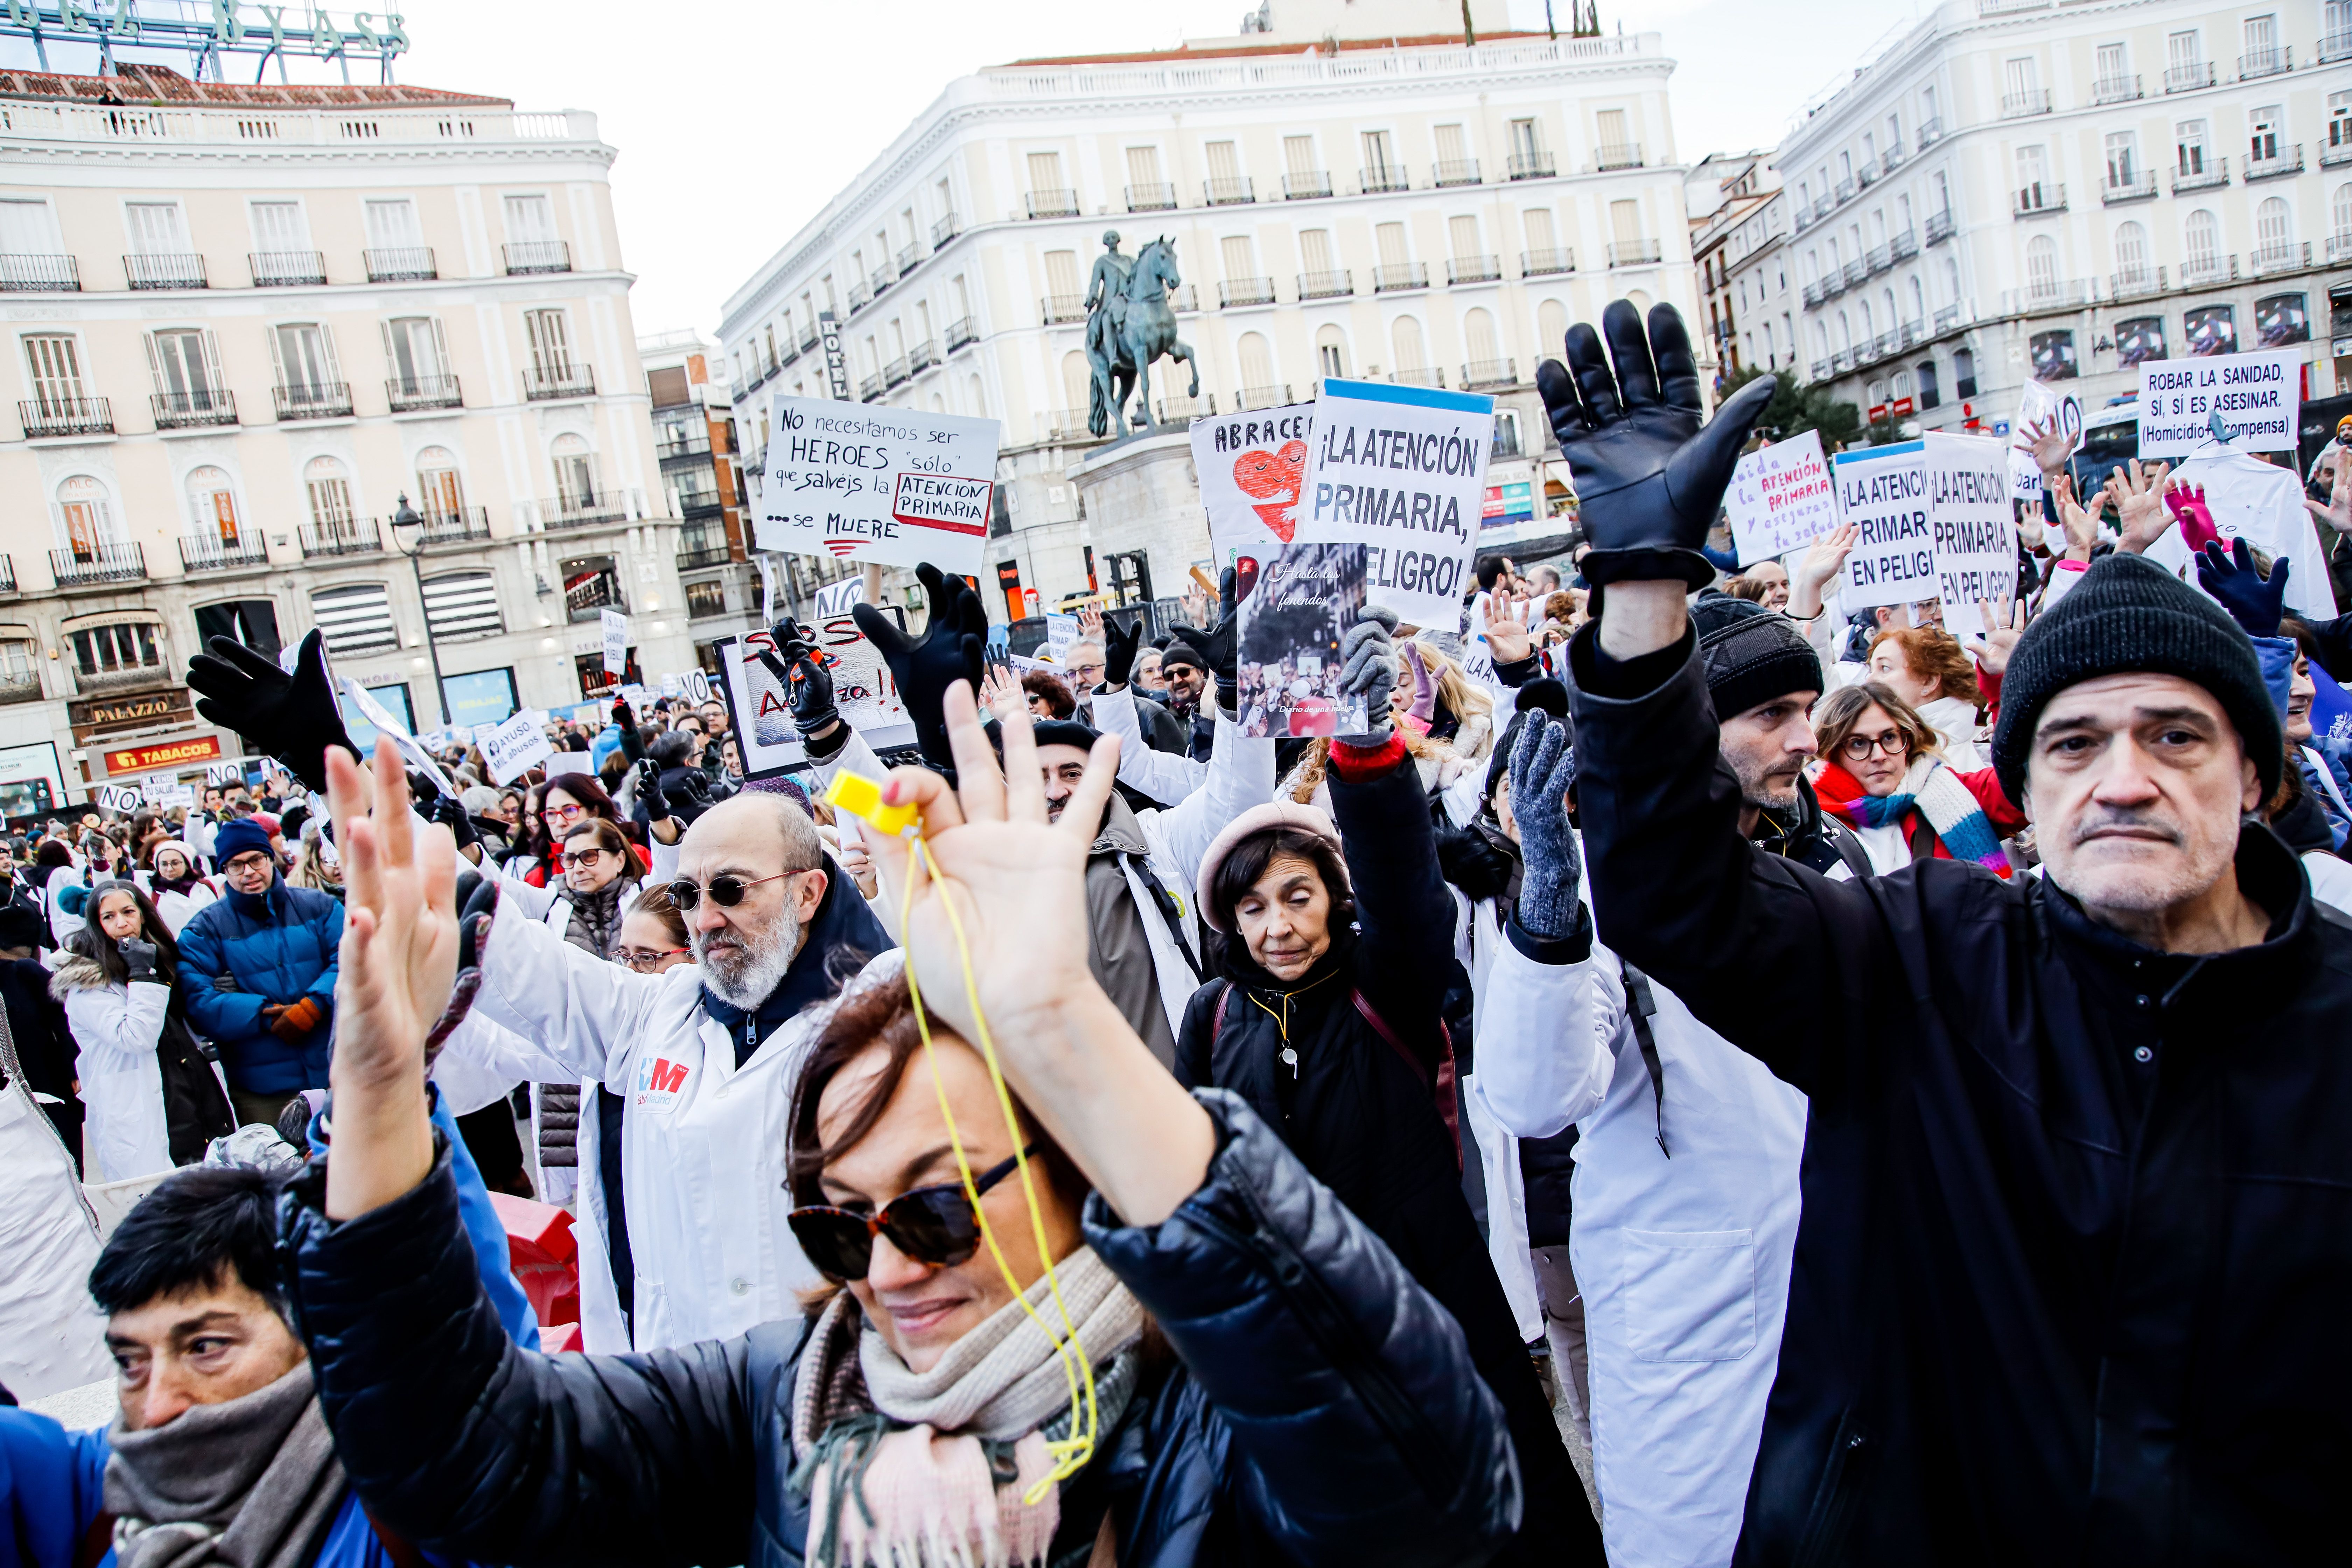 La PMP respalda las demandas del personal sanitario pidiendo reformas urgentes en la sanidad pública. Foto: Europa Press